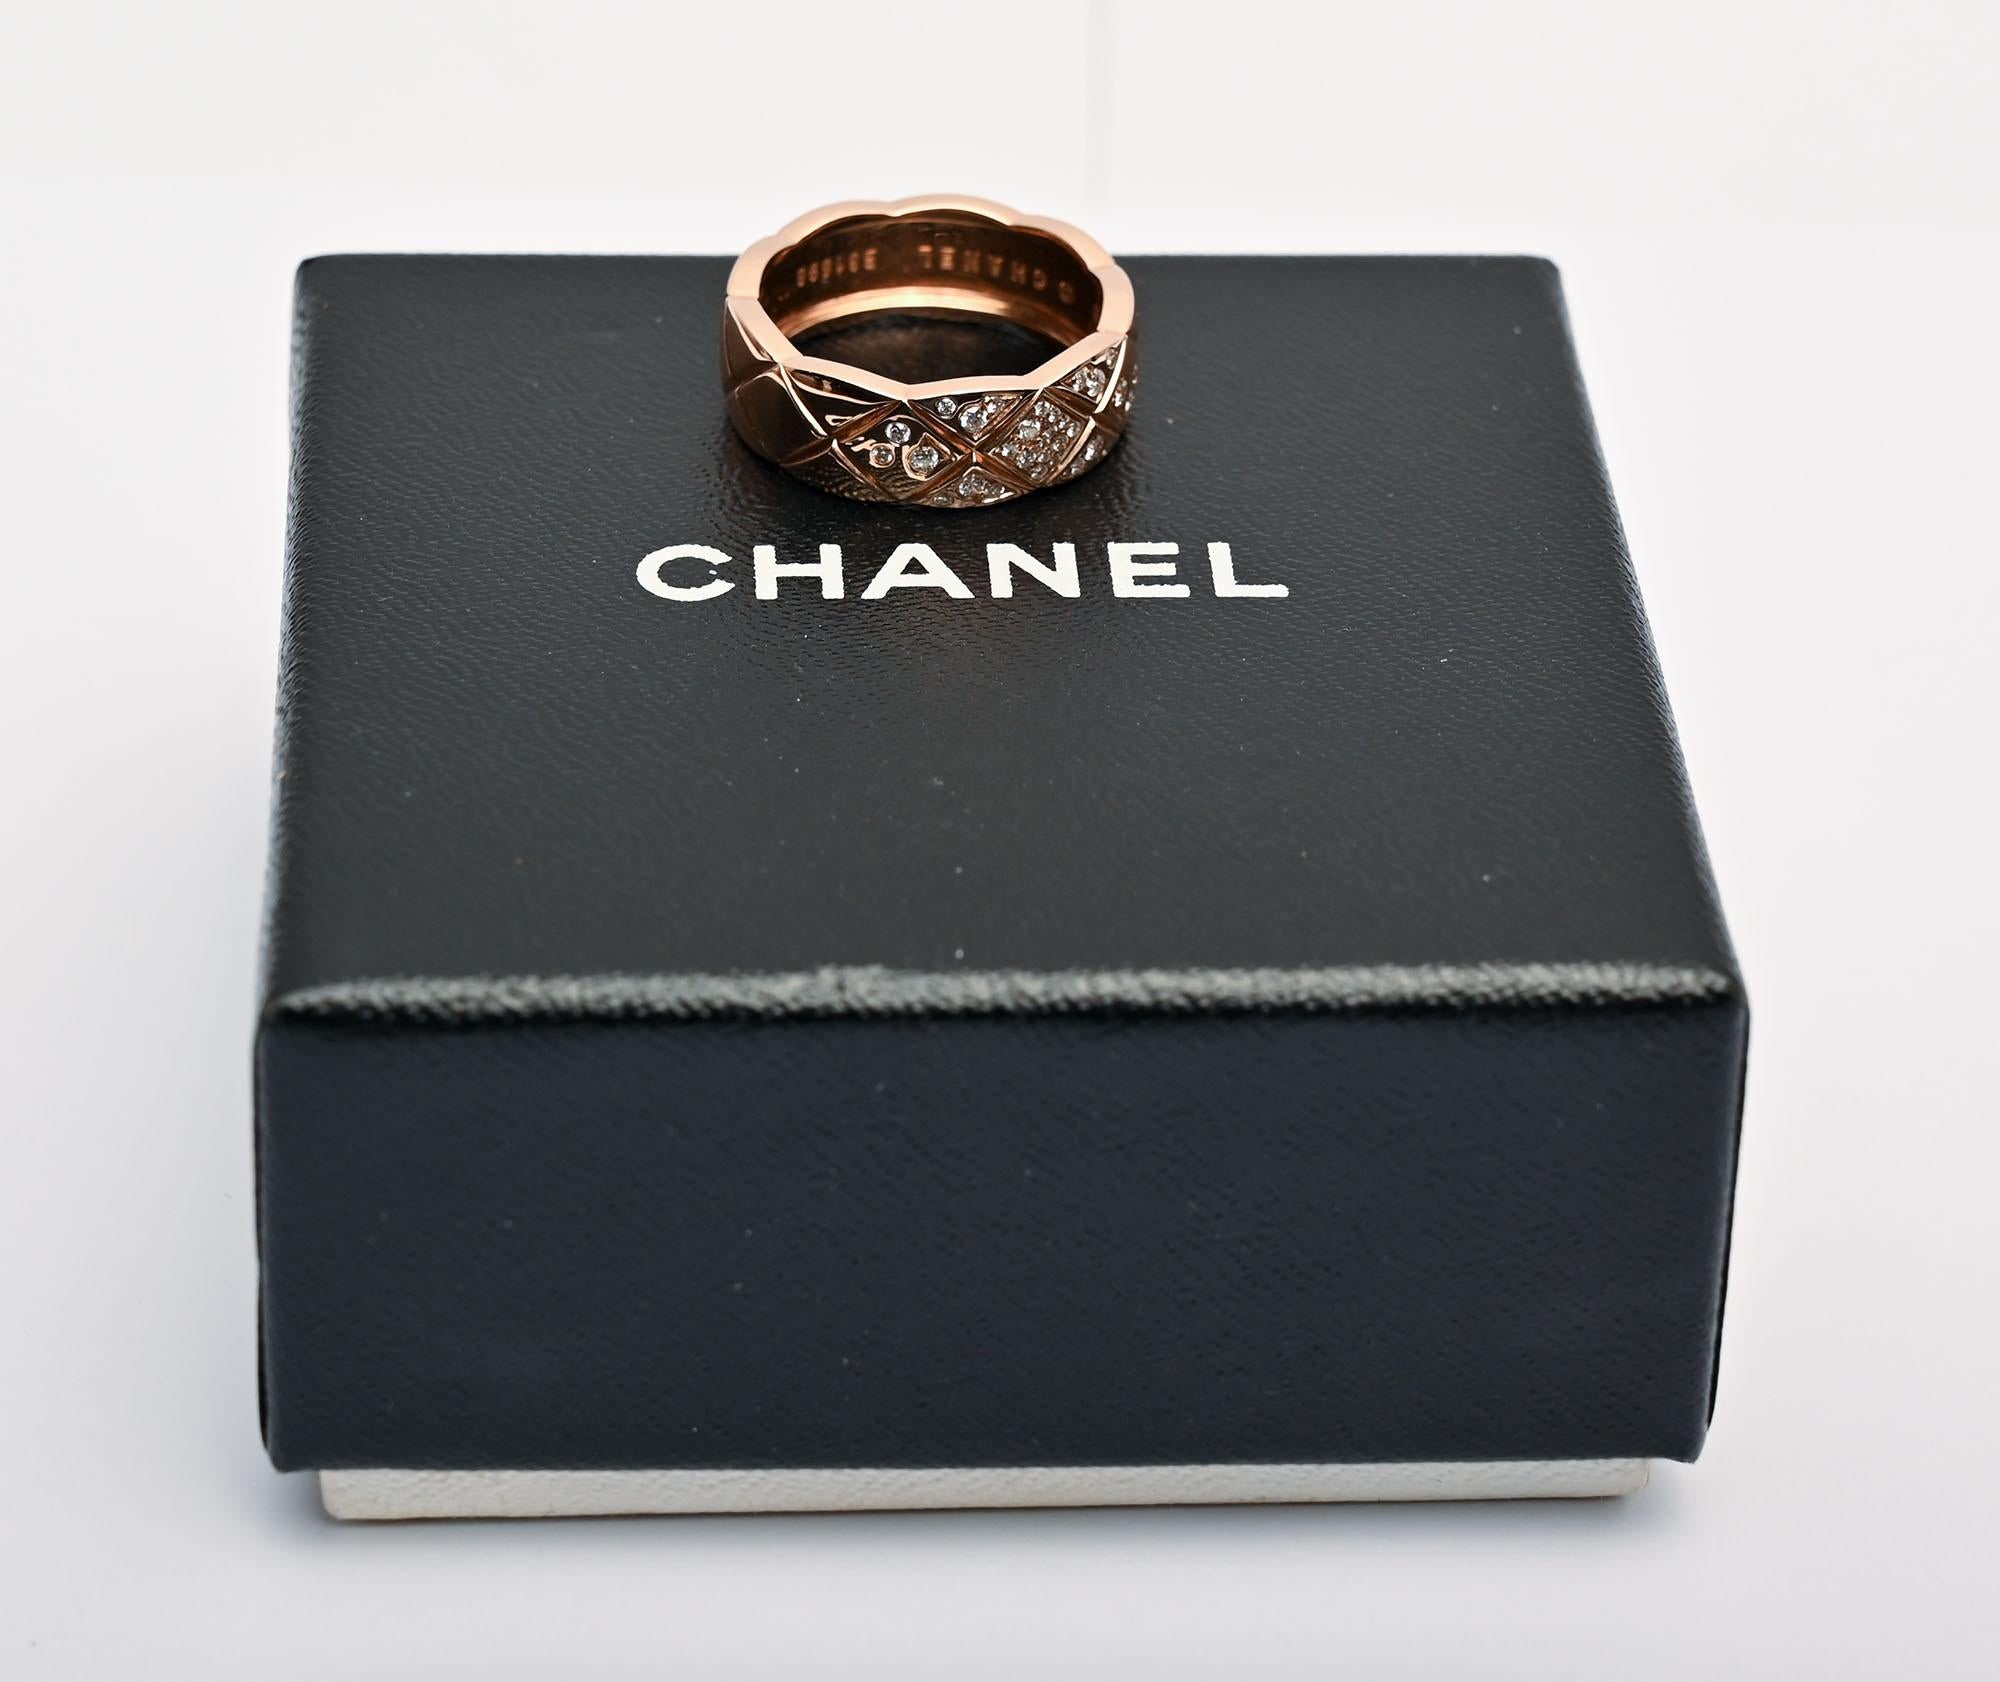 Der Ring Coco Crush ist einer der beliebtesten und bekanntesten Ringe von Chanel. Sie ist durchgehend mit dem klassischen Steppmuster von Chanel versehen. Er besteht aus dem, was Chanel als Beigegold bezeichnet, was die meisten als Rosé- oder